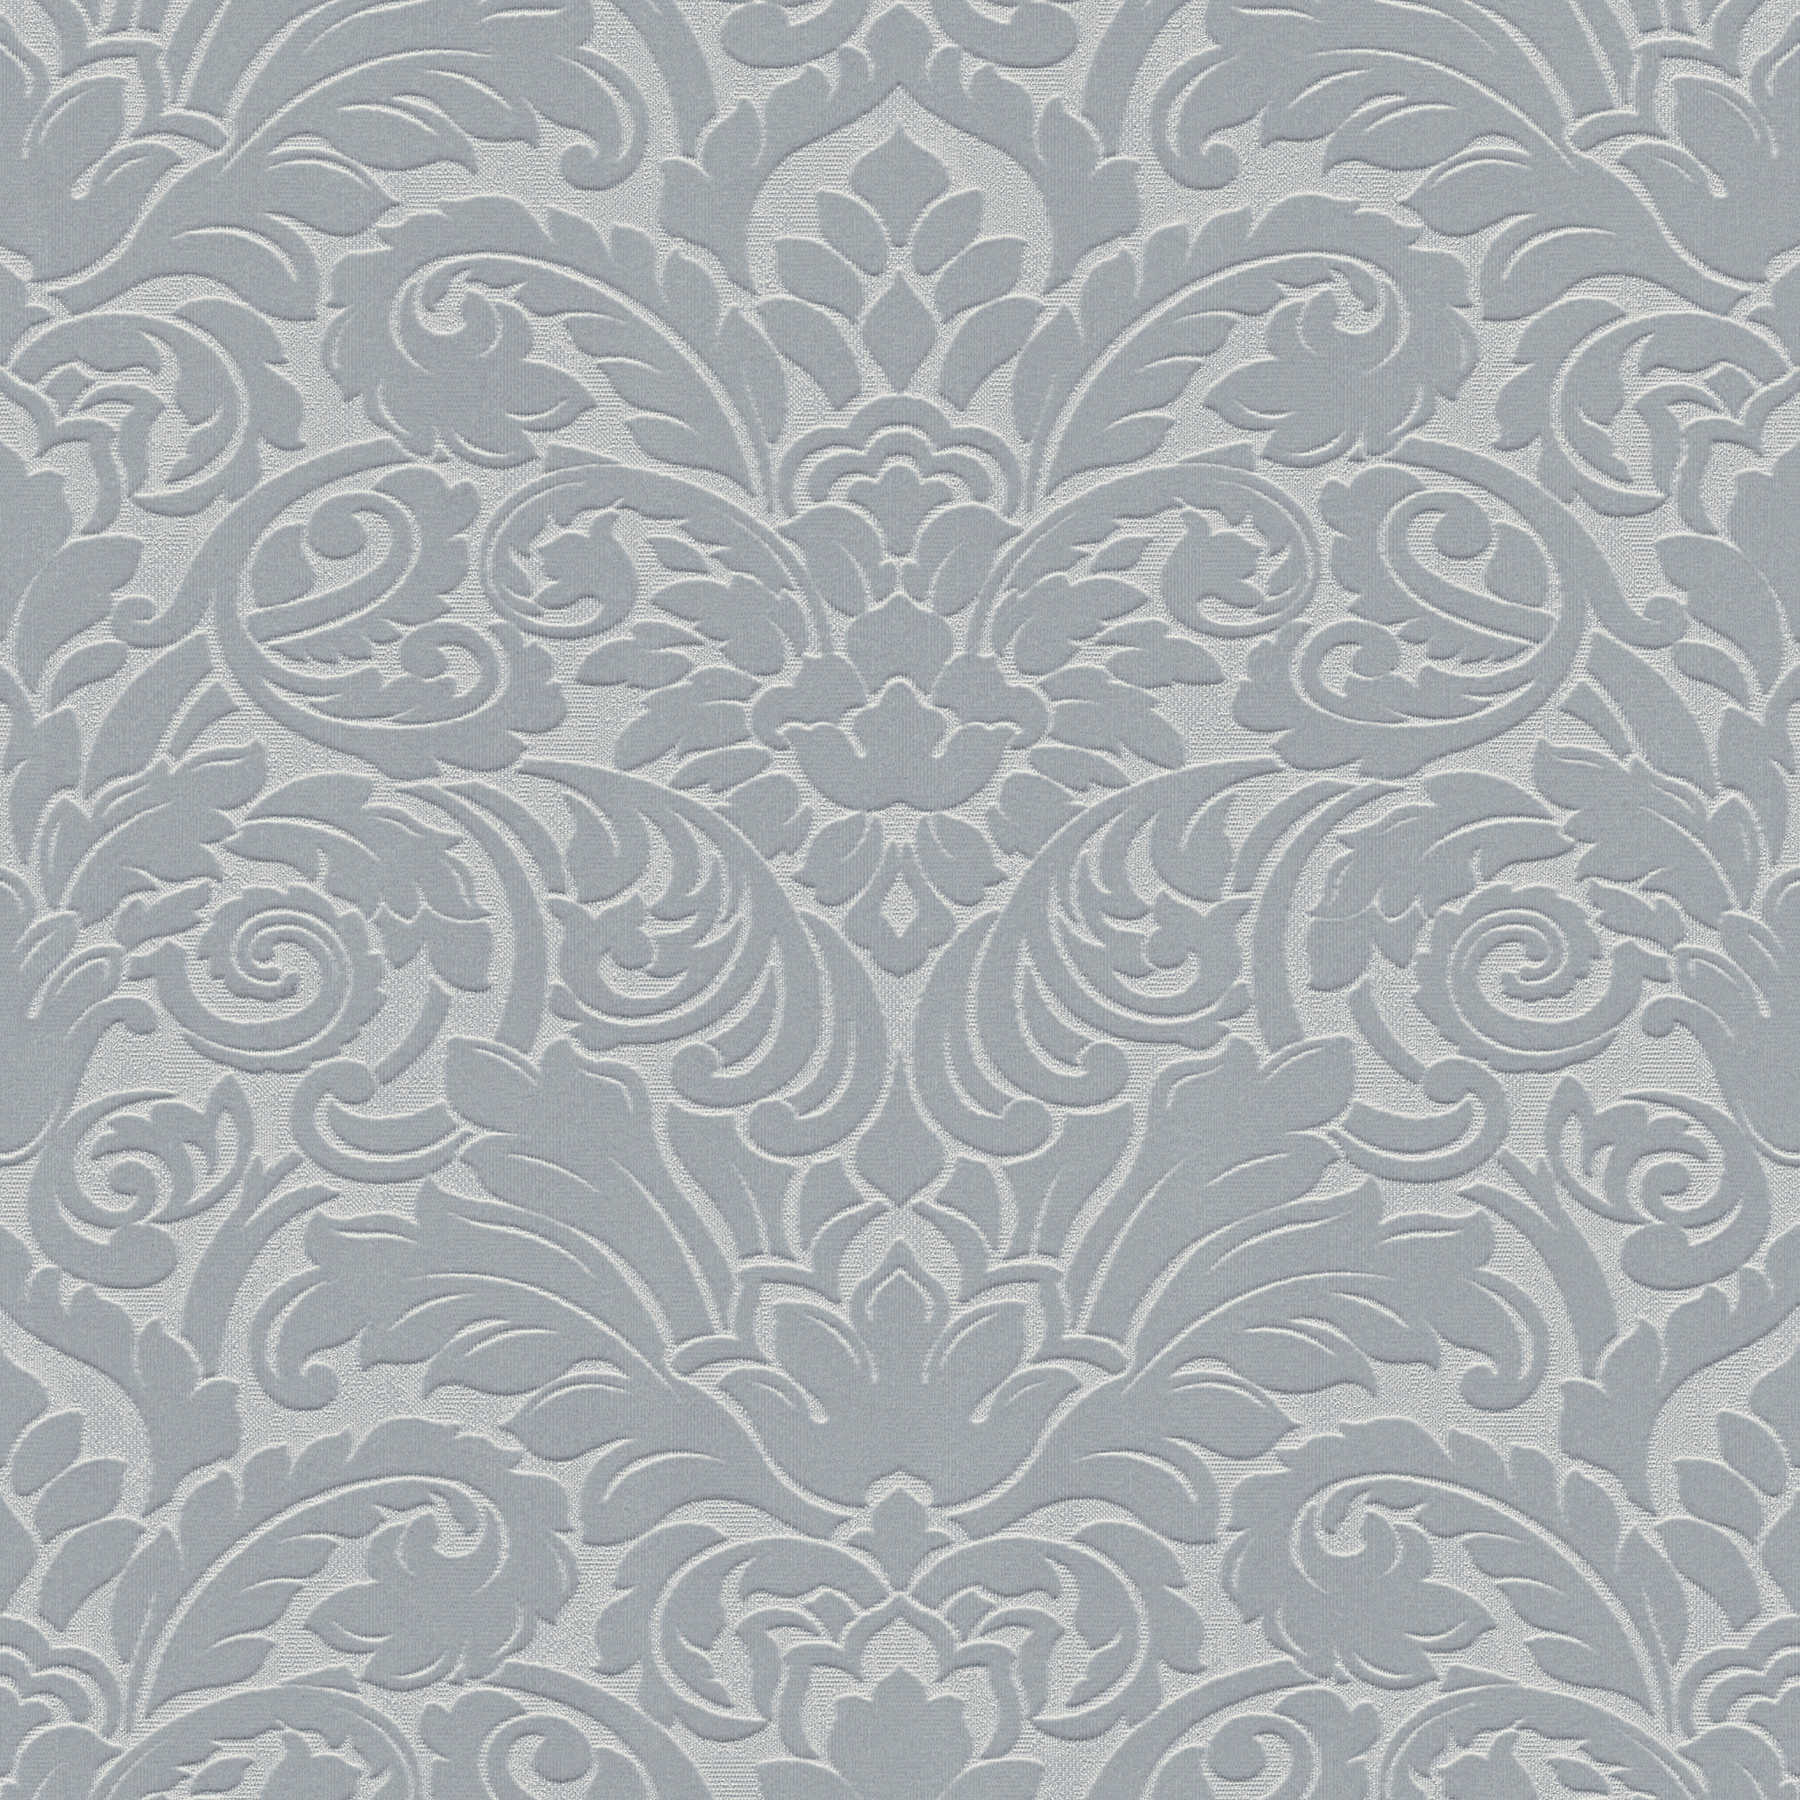 Metallic baroque wallpaper with 3D texture embossing - grey
